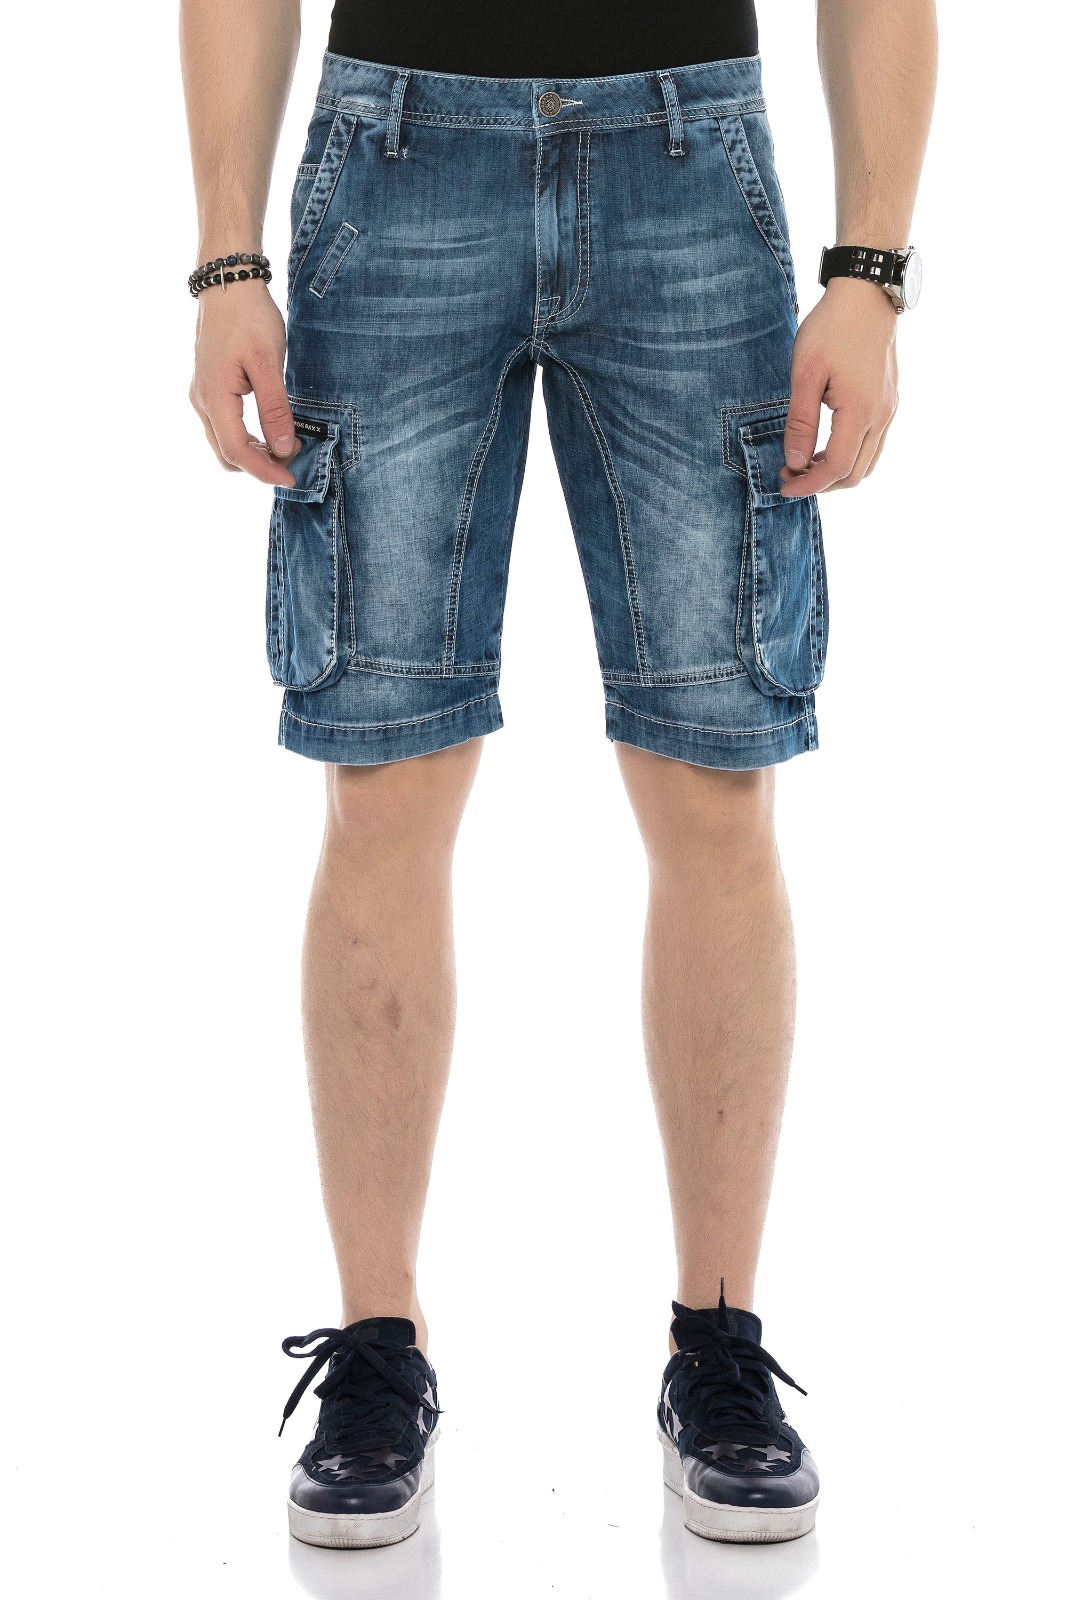 Pantaloncini Bermuda Jeans  con Tasconi Cipo & Baxx %Scontati 20%% Per Covid